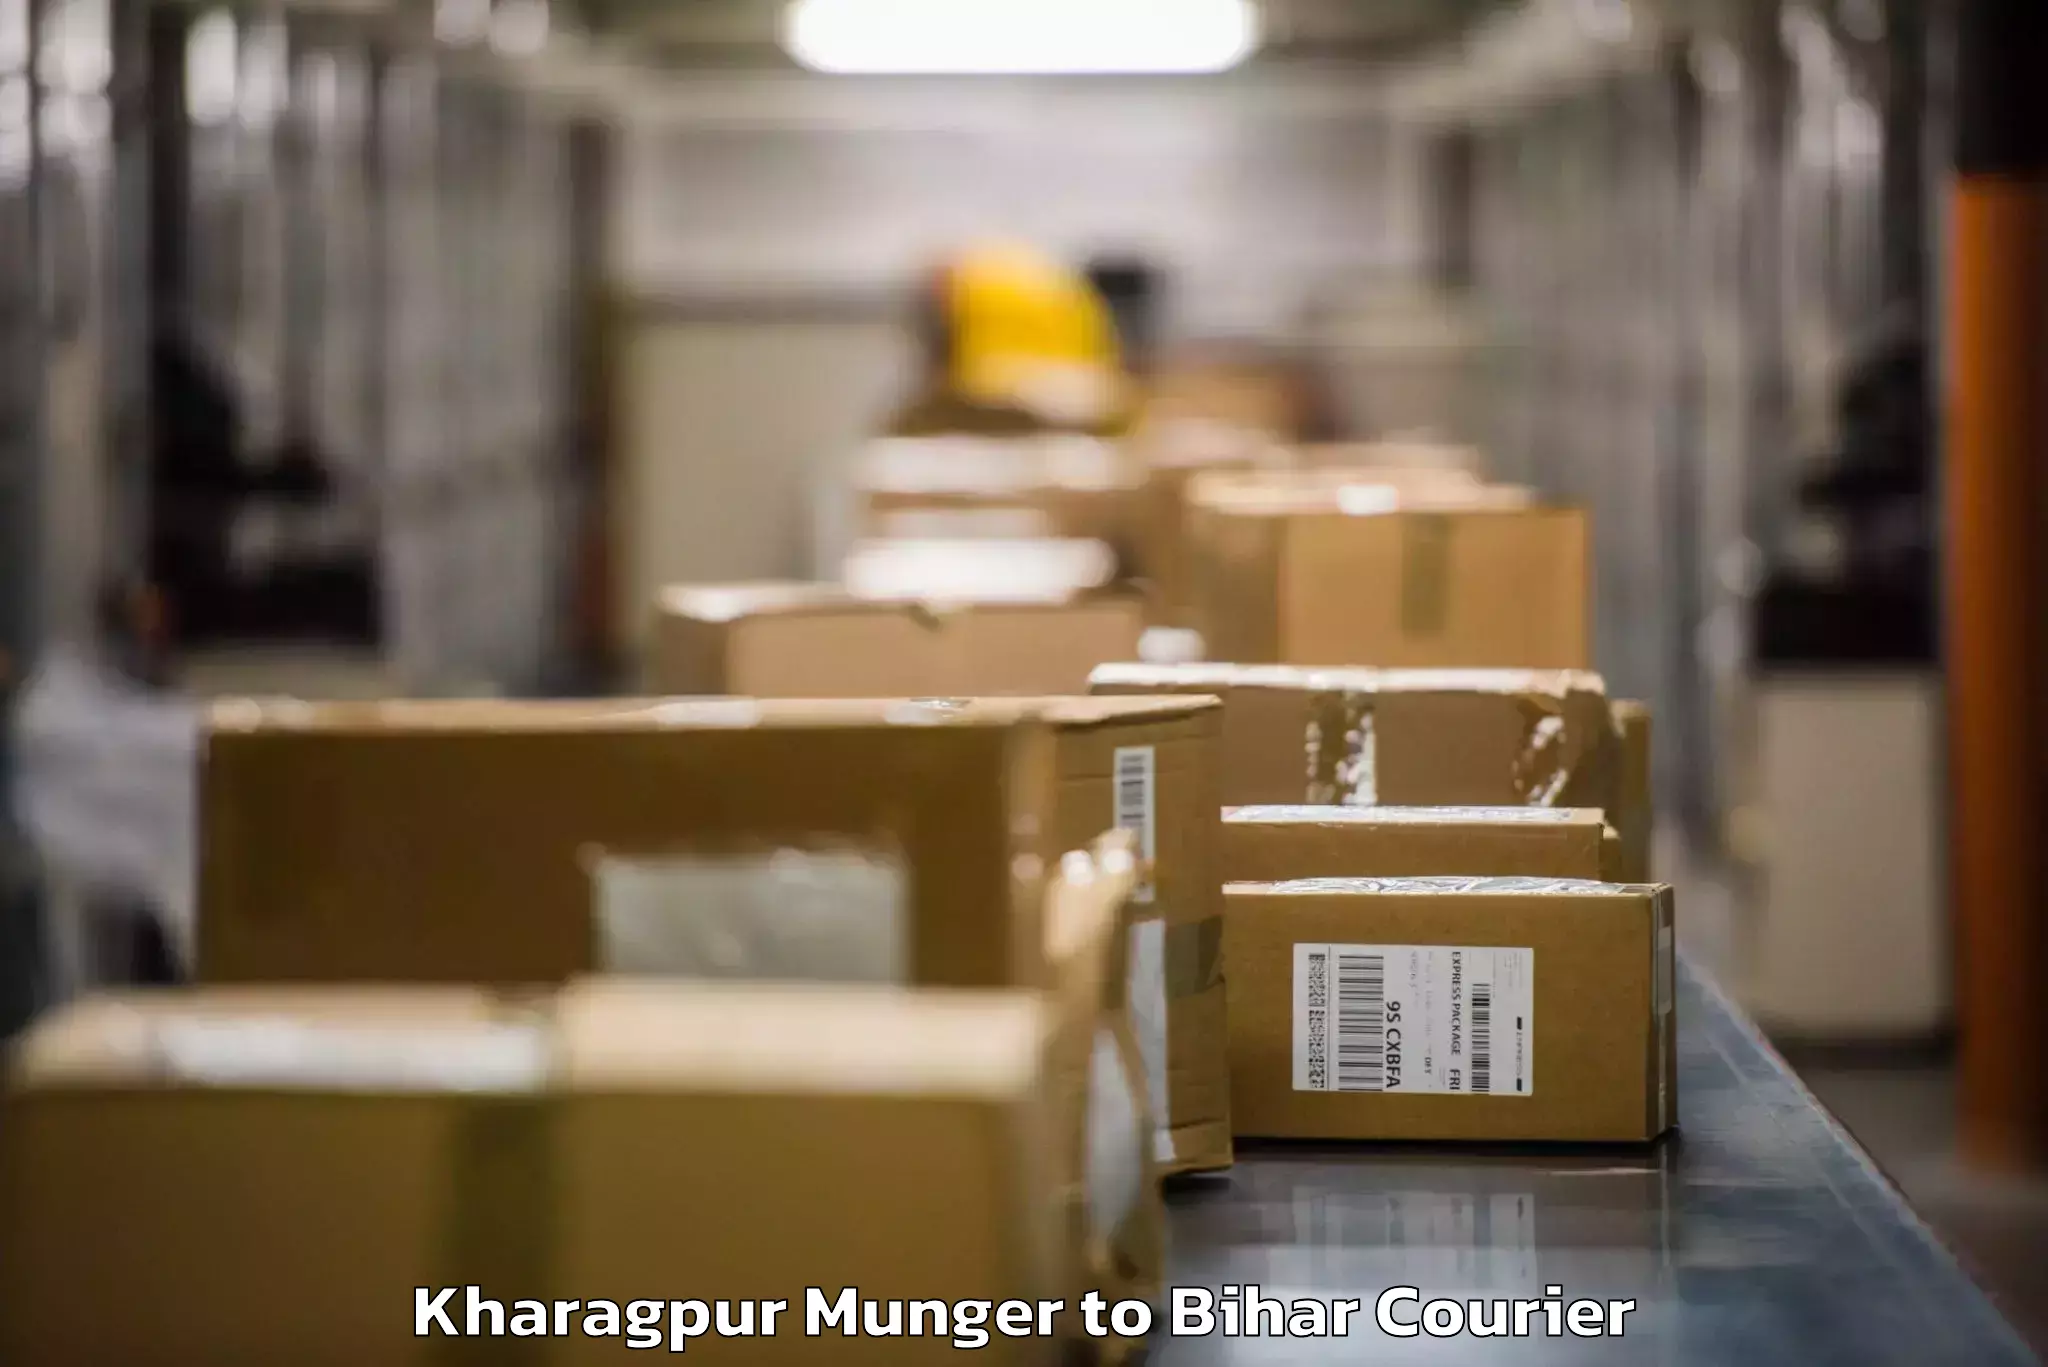 Luggage shipment tracking Kharagpur Munger to Lakhisarai